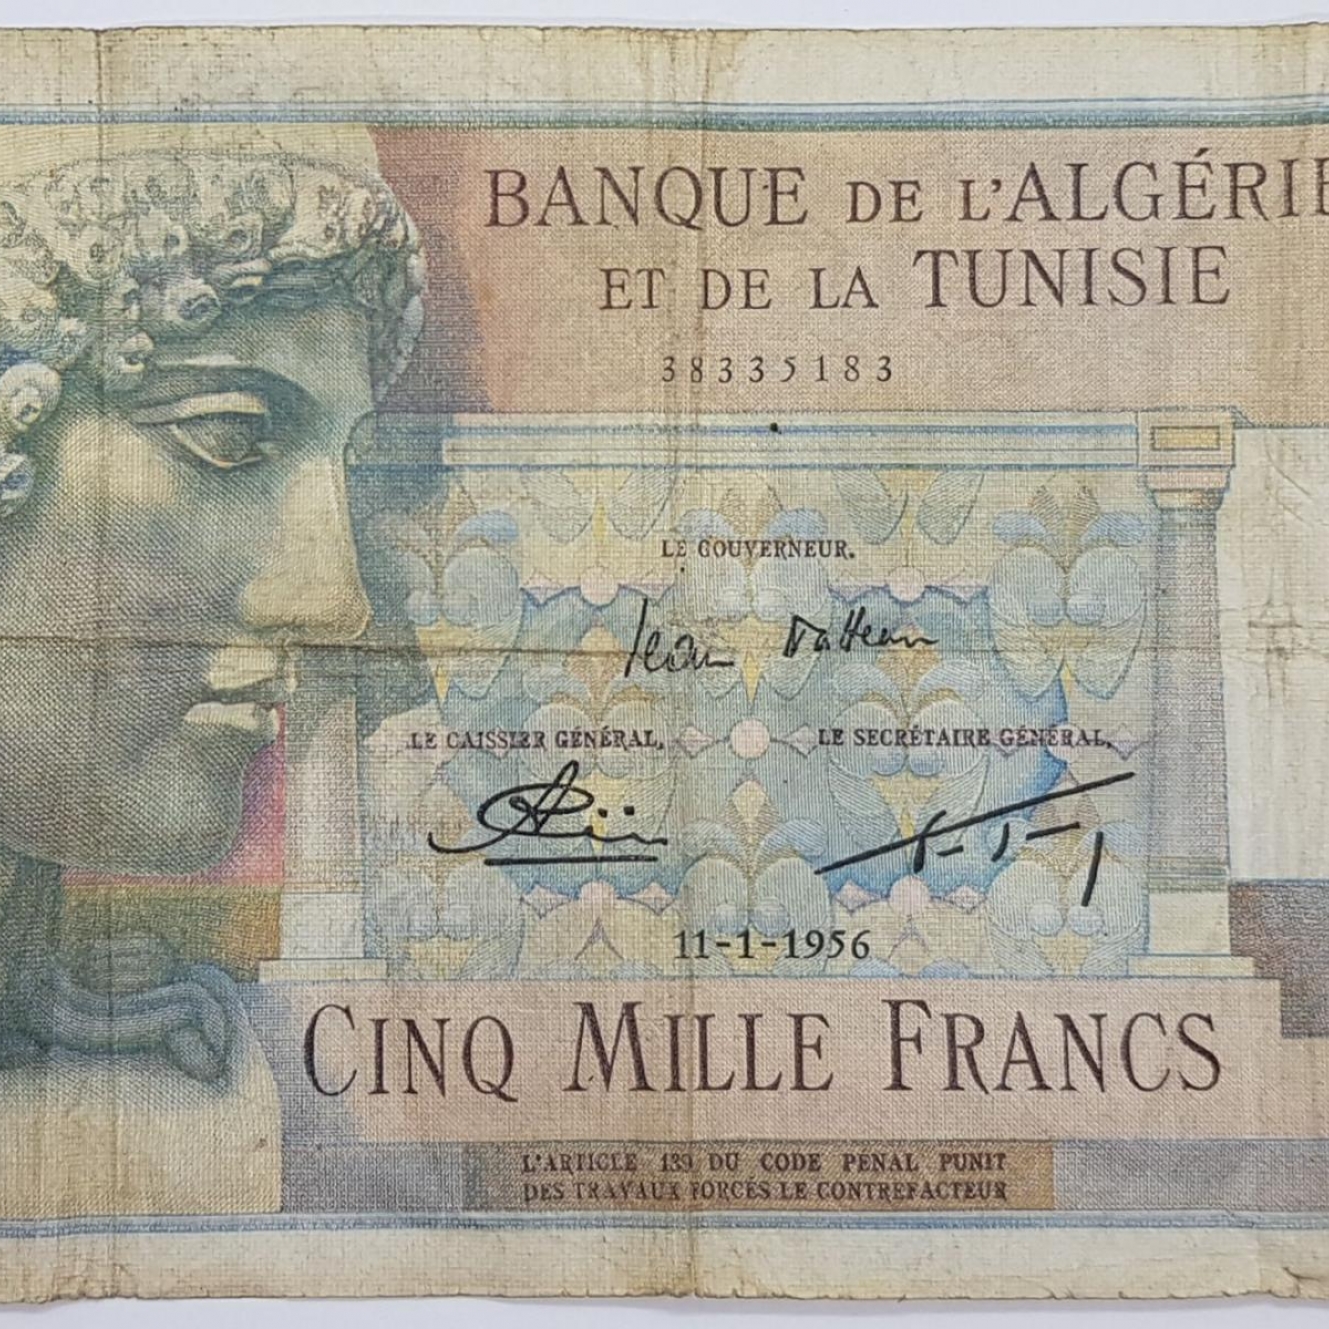 Collection Algerie Rare 5000 francs 11-01-1956 !!